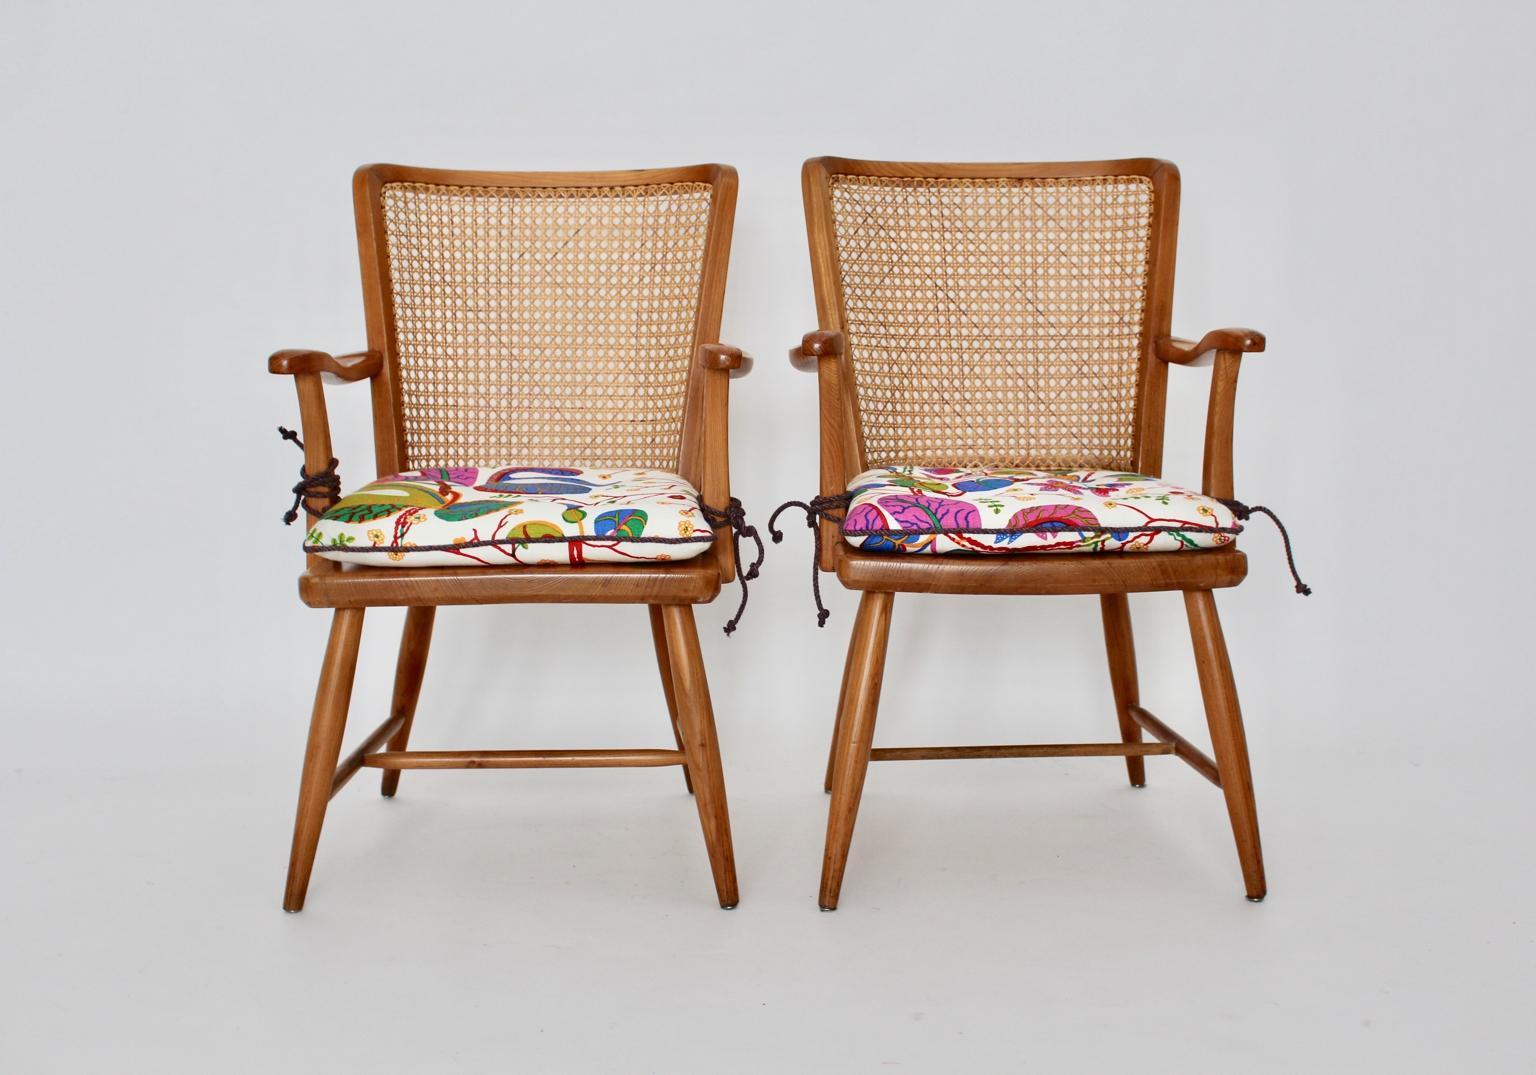 Art Deco zwei Sessel aus Eschenholz und Wiener Netz von Josef Frank, Wien um 1928.
Die Sessel weisen im Rückenbereich eine Wiener Netzstruktur auf. Außerdem haben die Sessel leicht geschwungene Armlehnen.
Die losen Kissen werden in Handarbeit